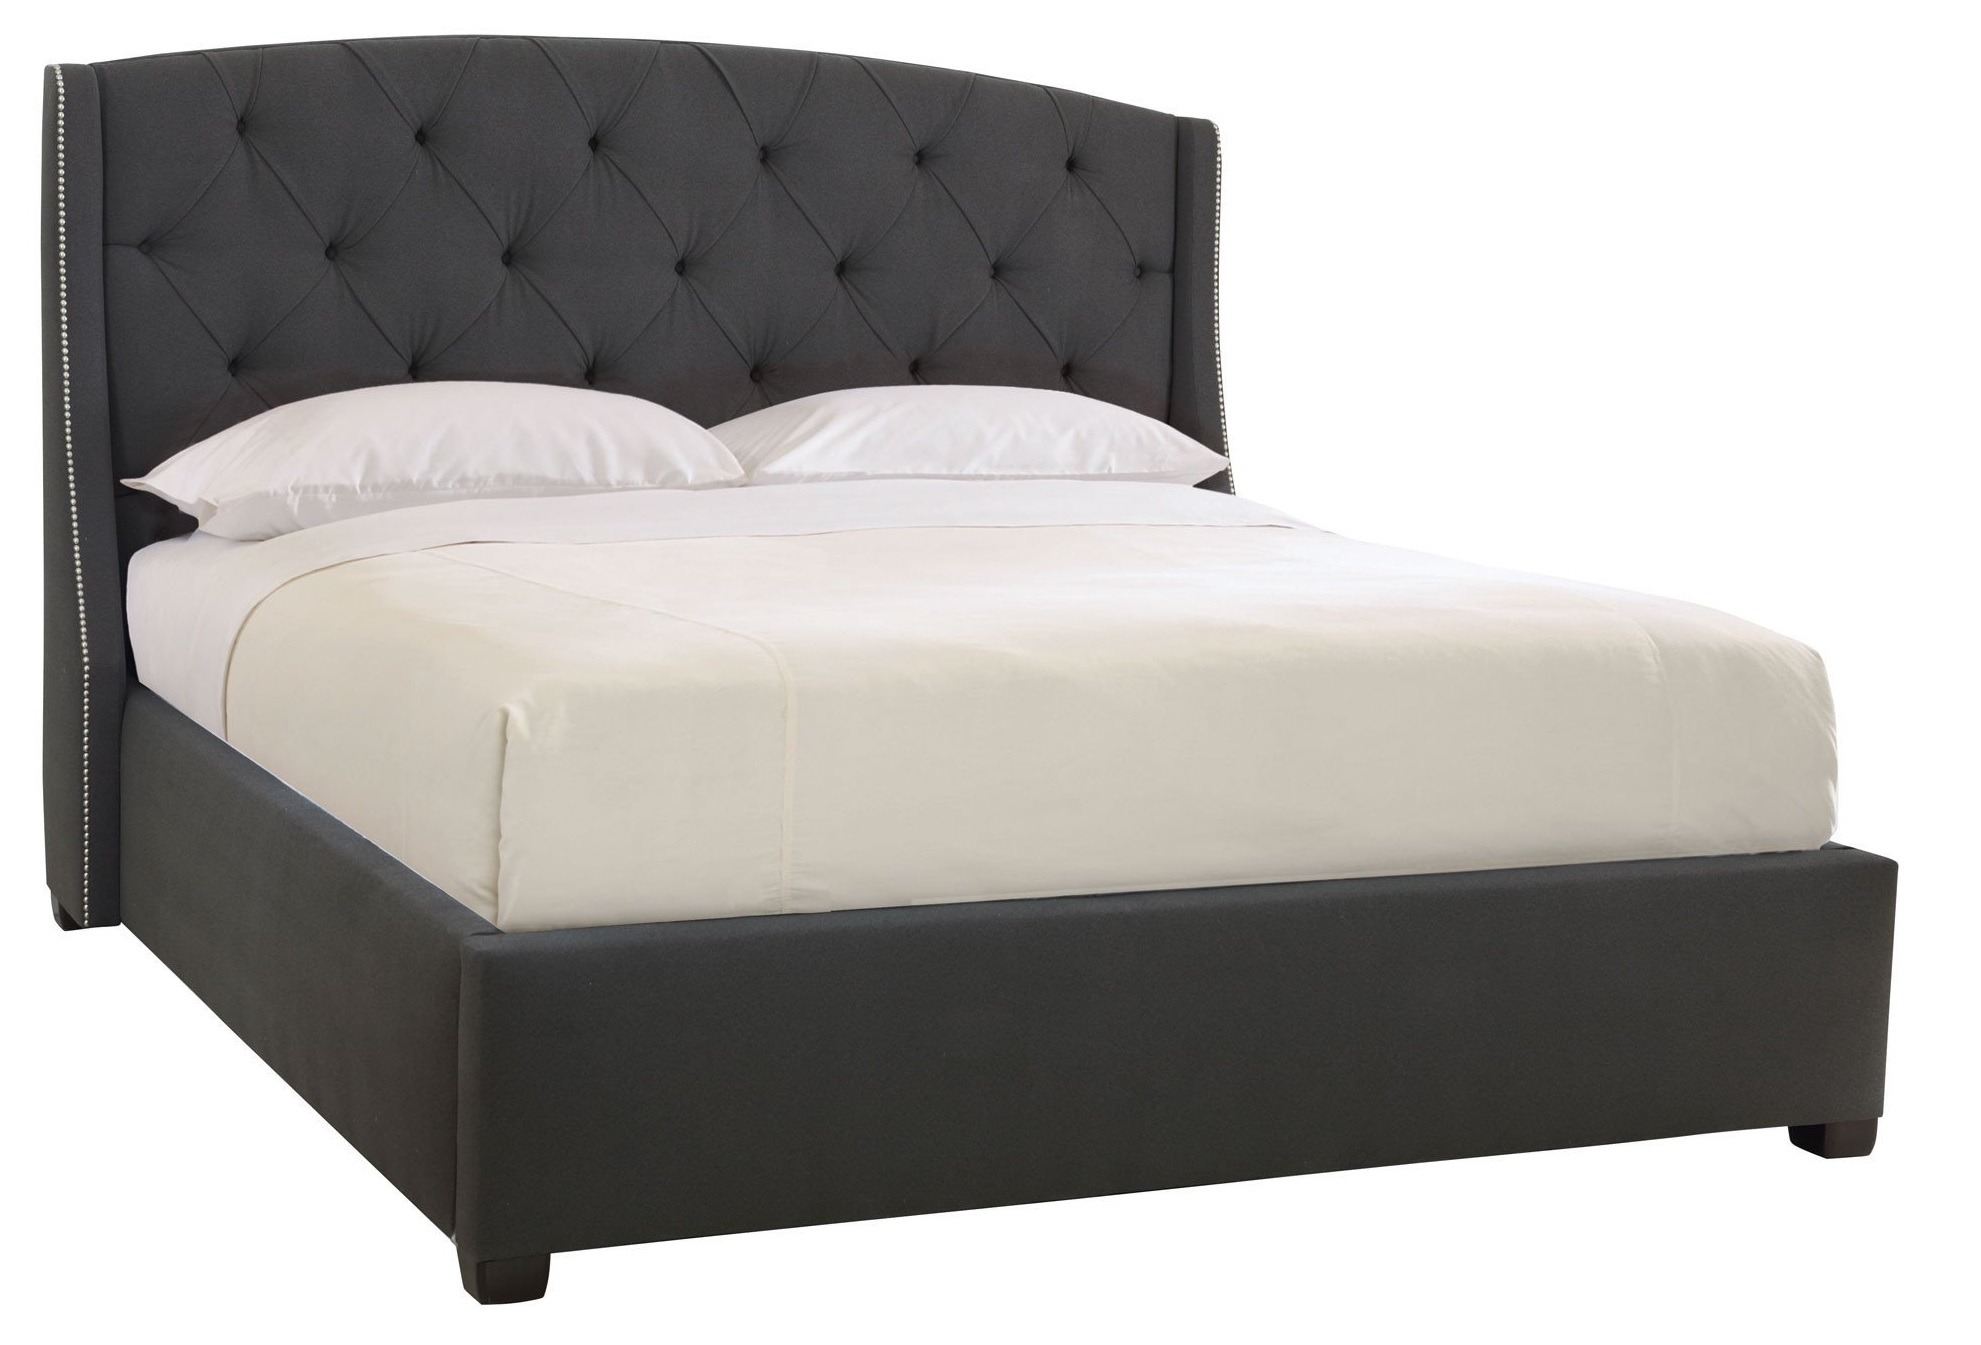 Jordan queen bed 1800 x 2000 mm Price: 19.000.000 VND/pc